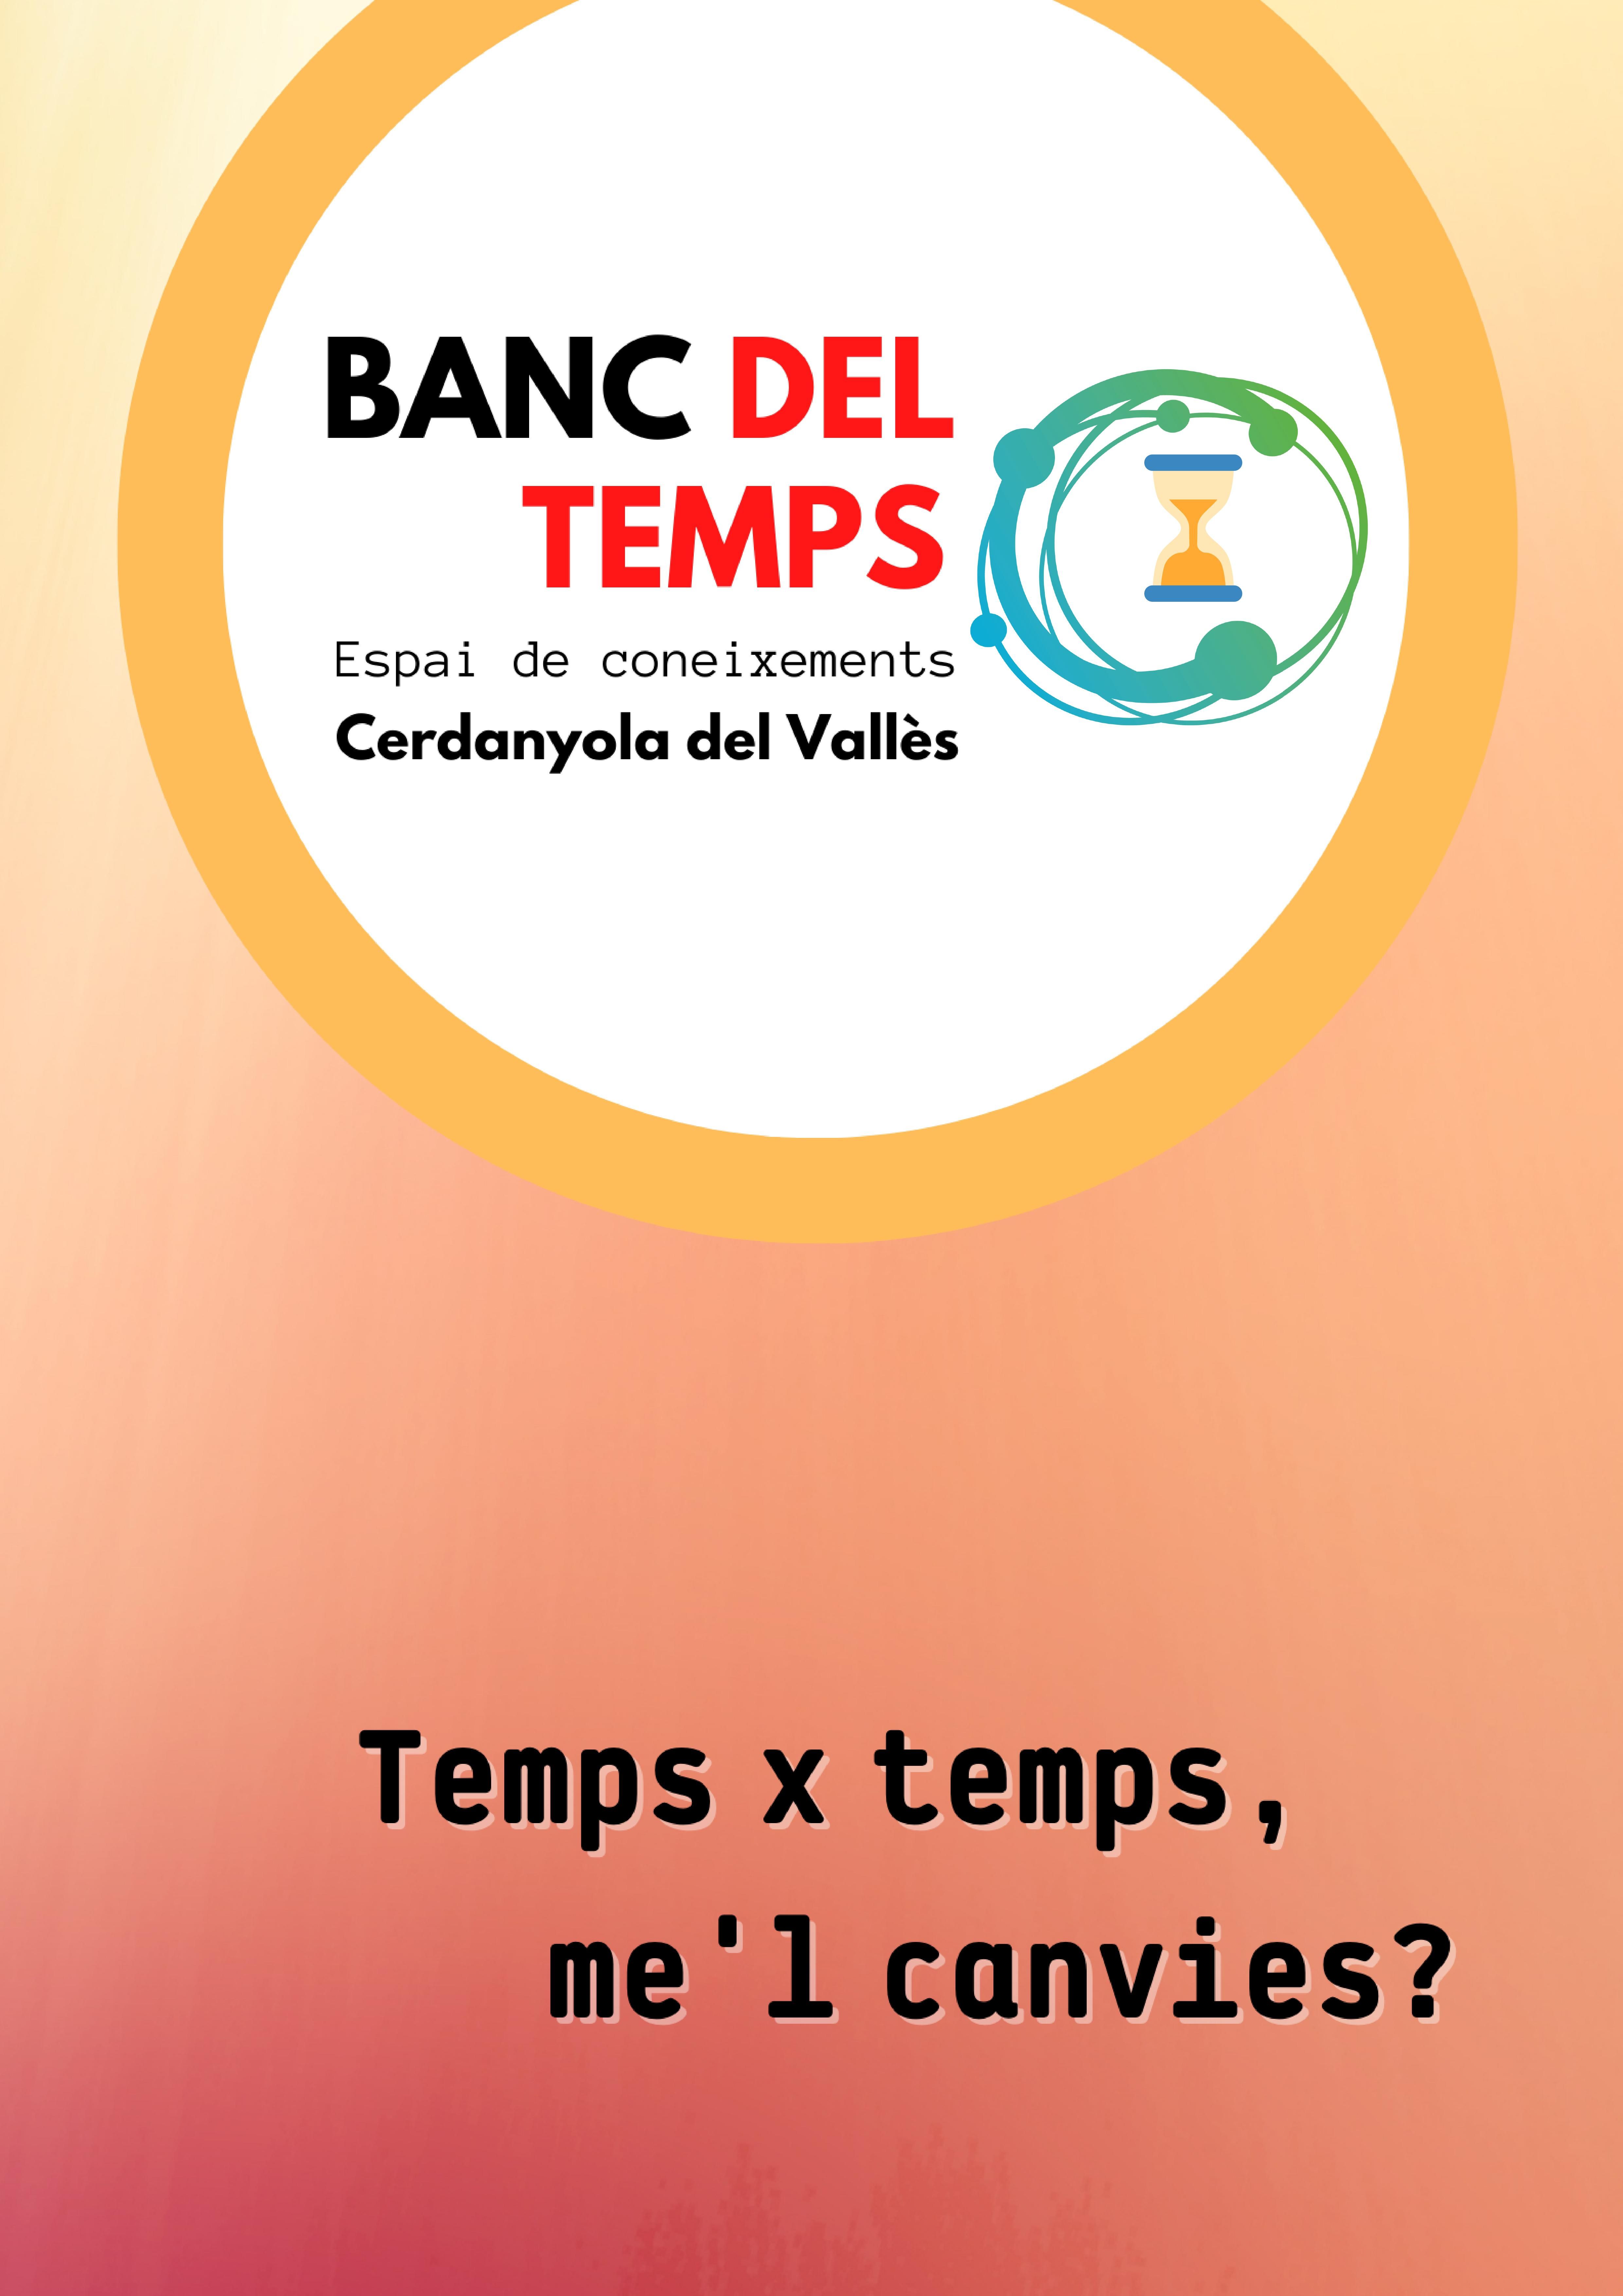 Logo Banc del Temps